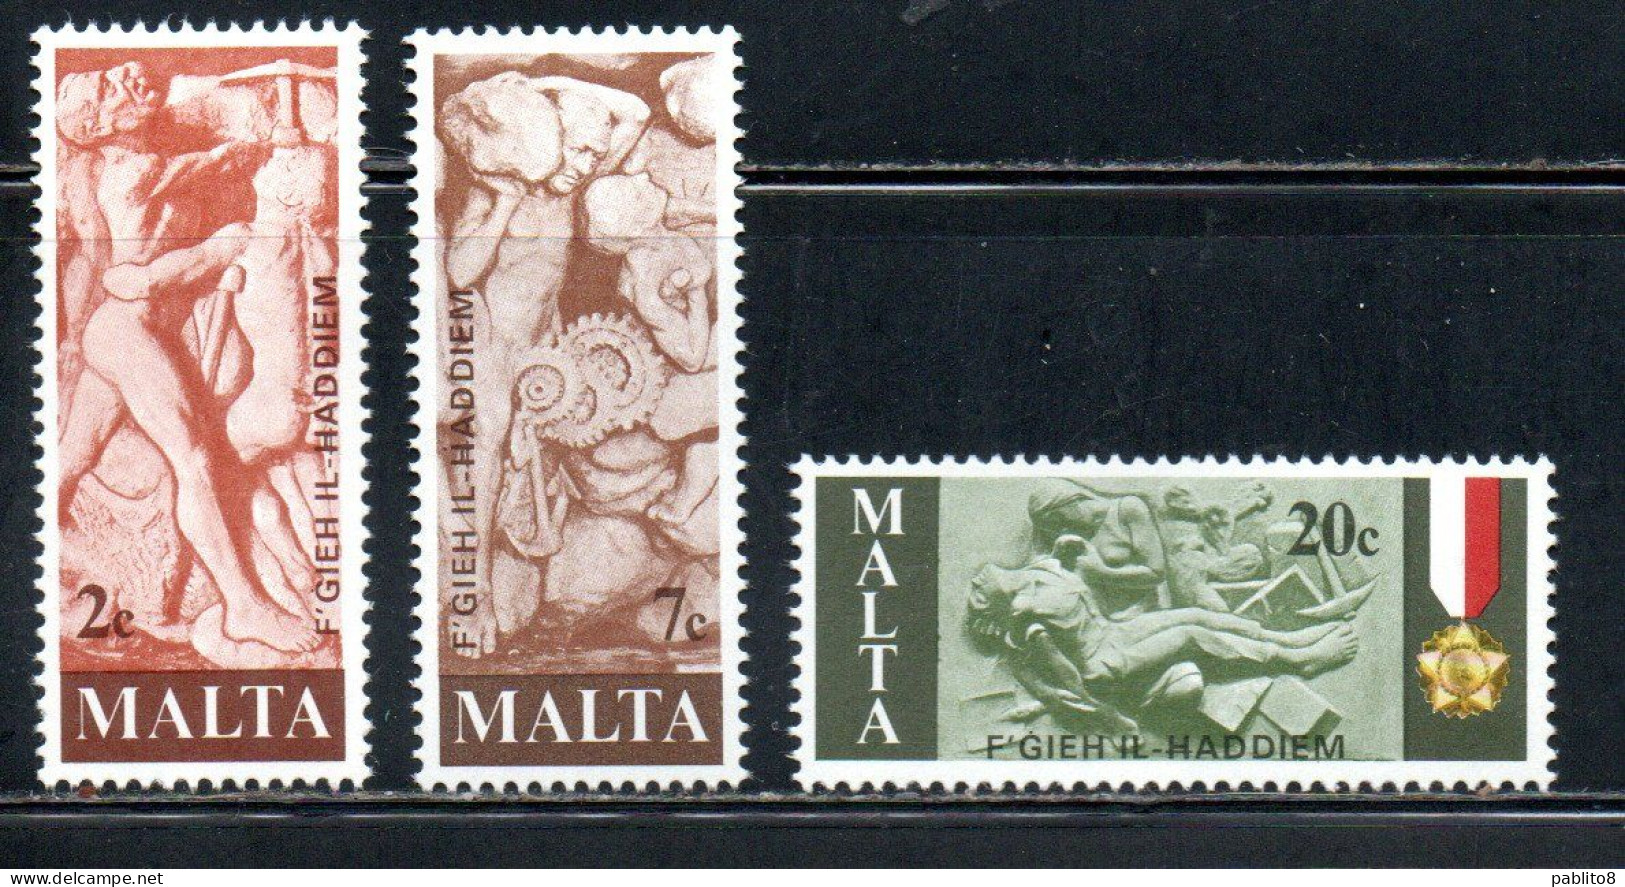 MALTA 1977 TRIBUTE TO MALTESE WORKERS SCULPTURES SCULTURE DEI LAVORATORI COMPLETE SET SERIE COMPLETA MNH - Malta